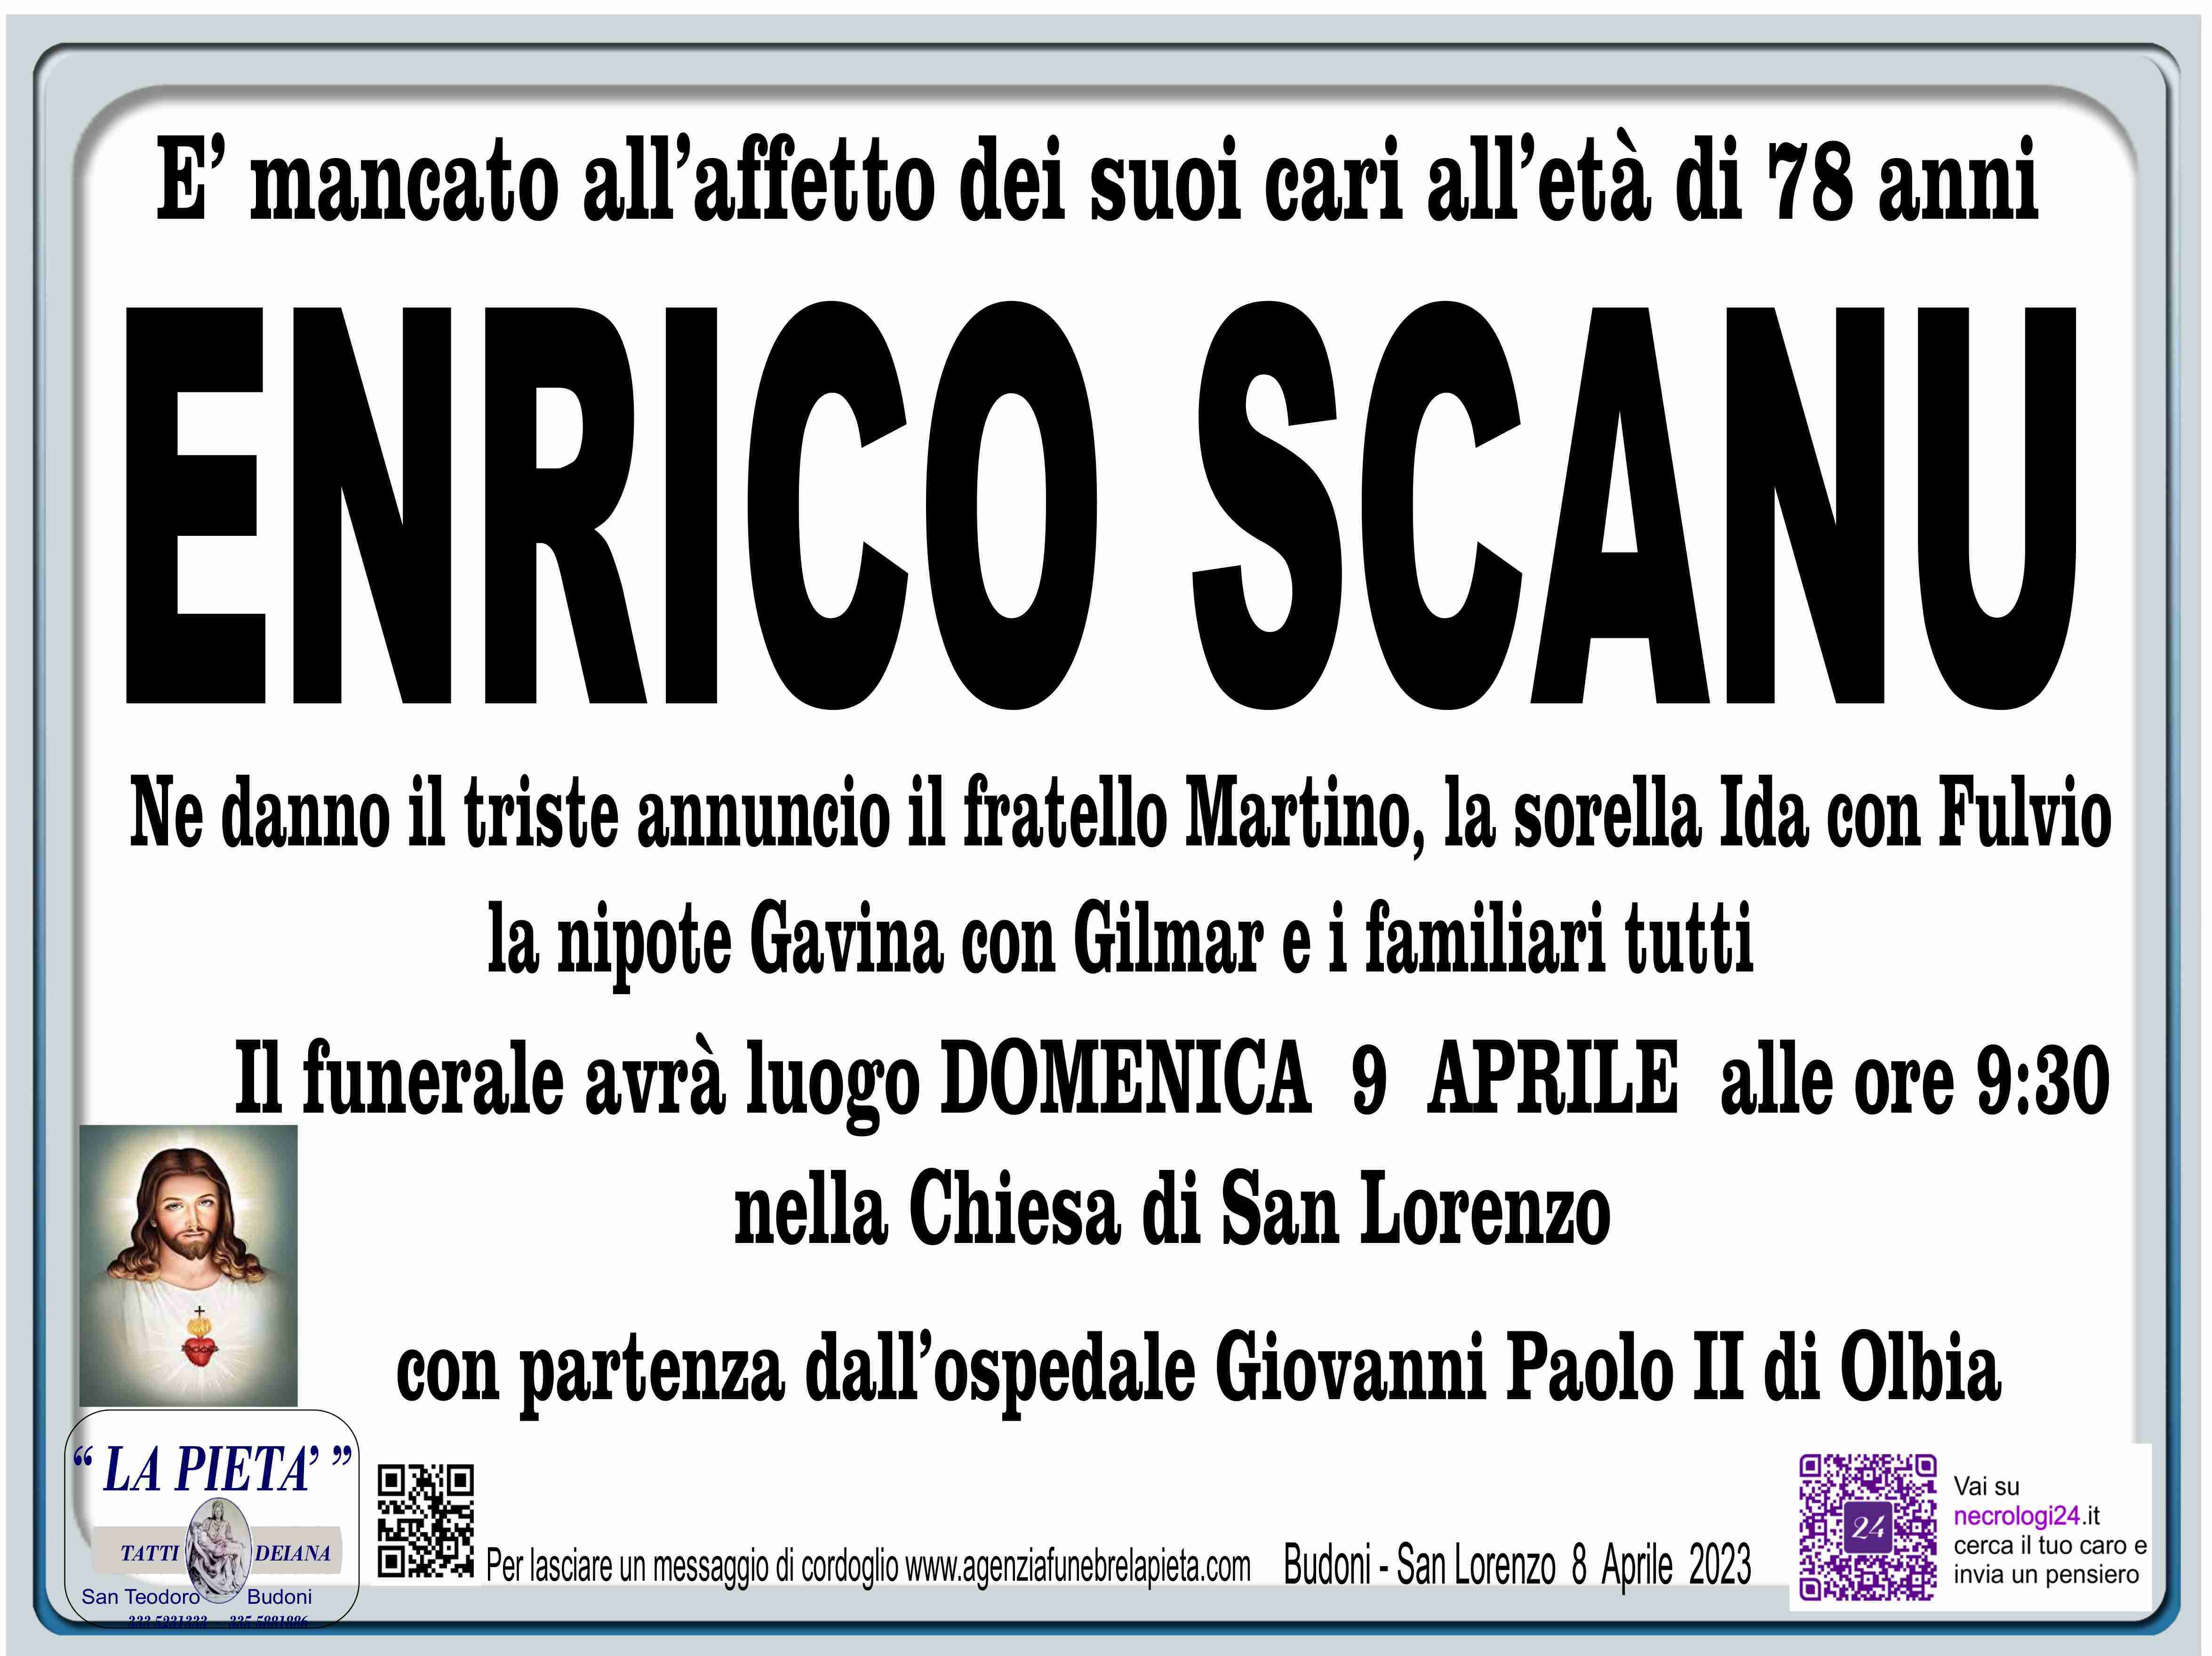 Enrico Scanu